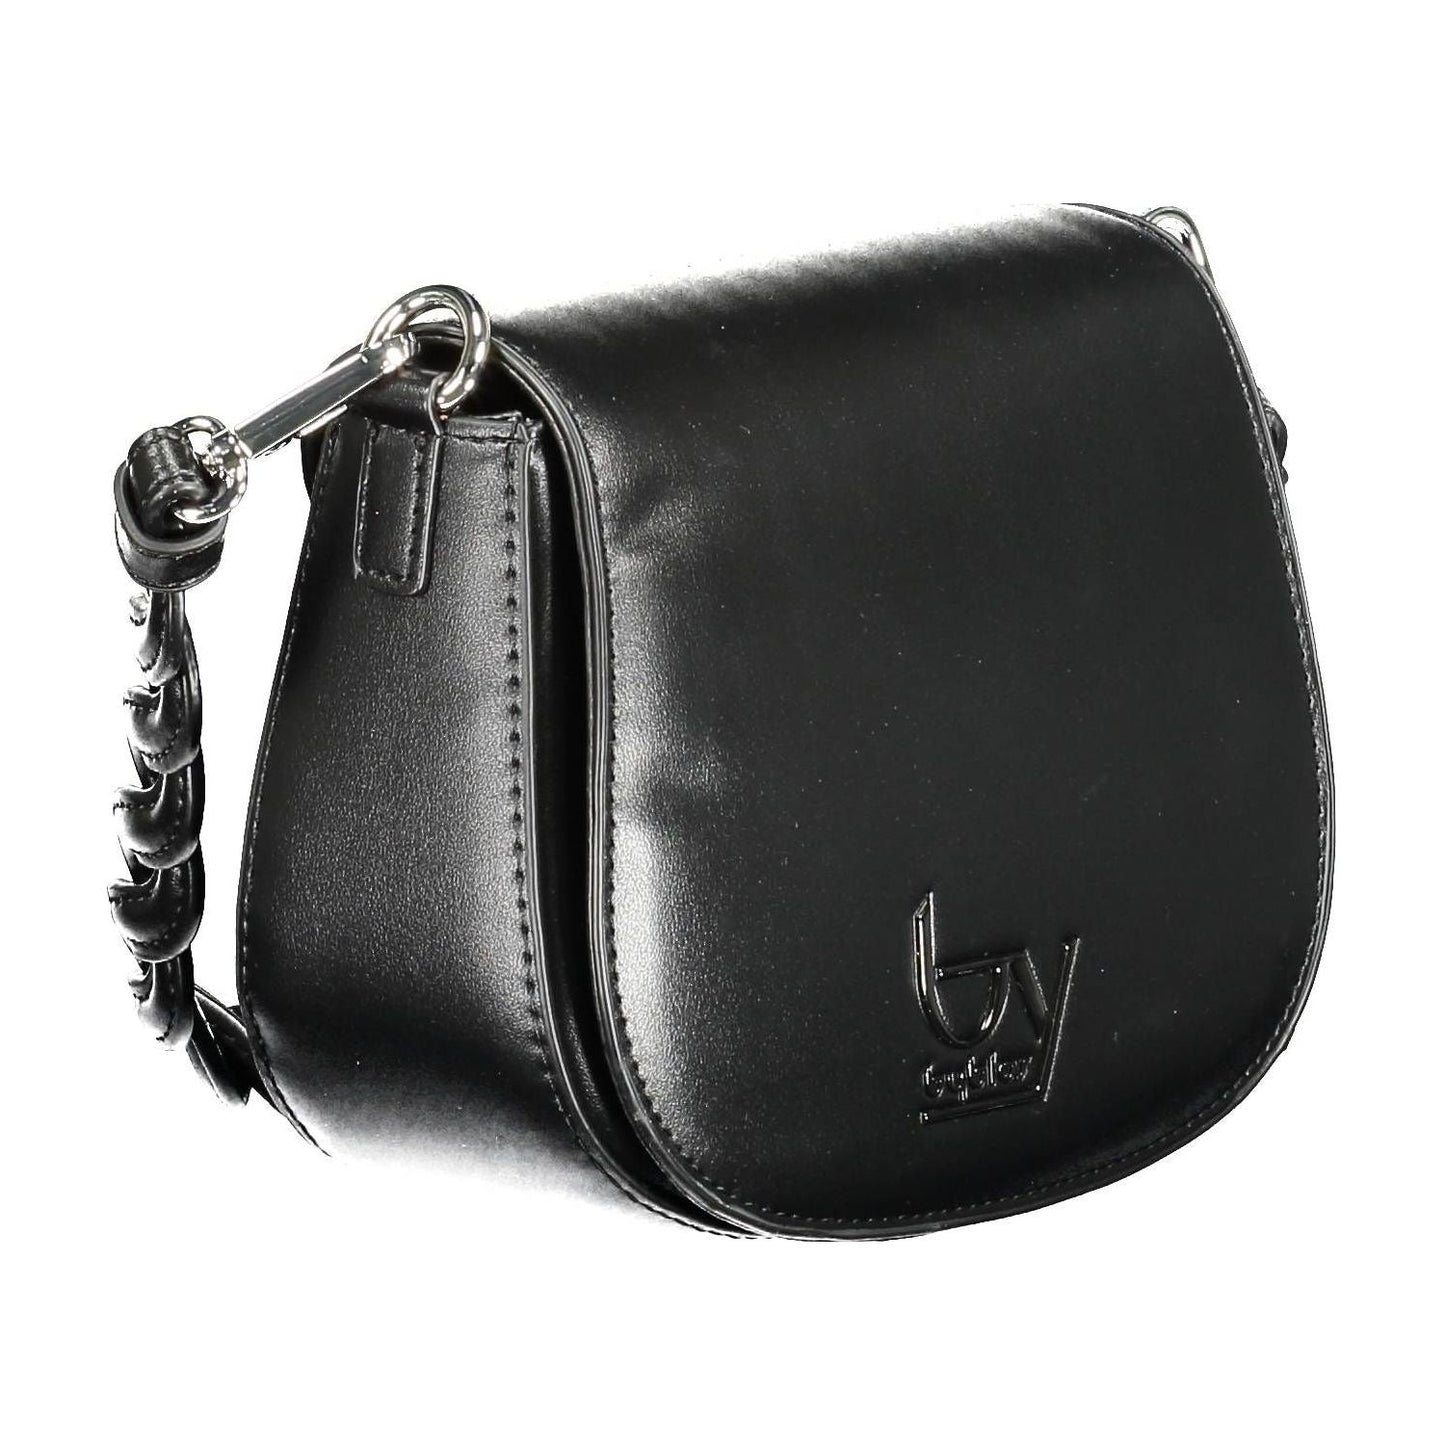 BYBLOS Elegant Contrasting Detail Black Handbag elegant-contrasting-detail-black-handbag